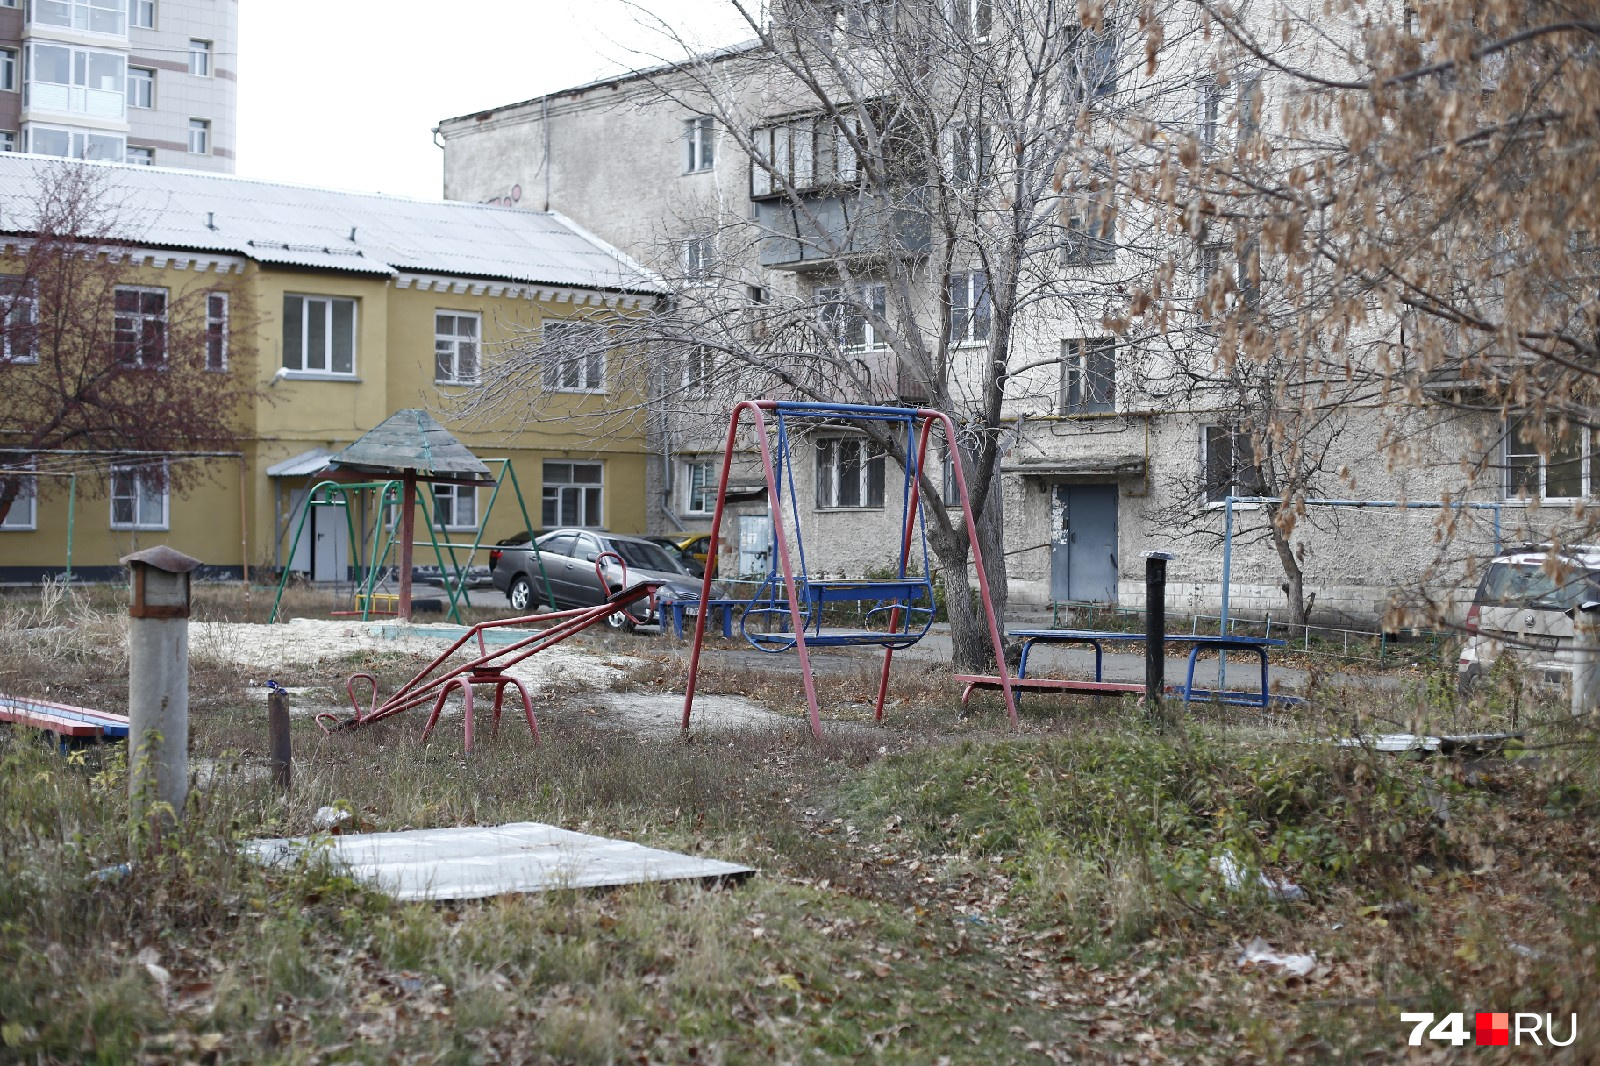 Район, в котором росла Екатерина Меньшикова, выглядит довольно безрадостным